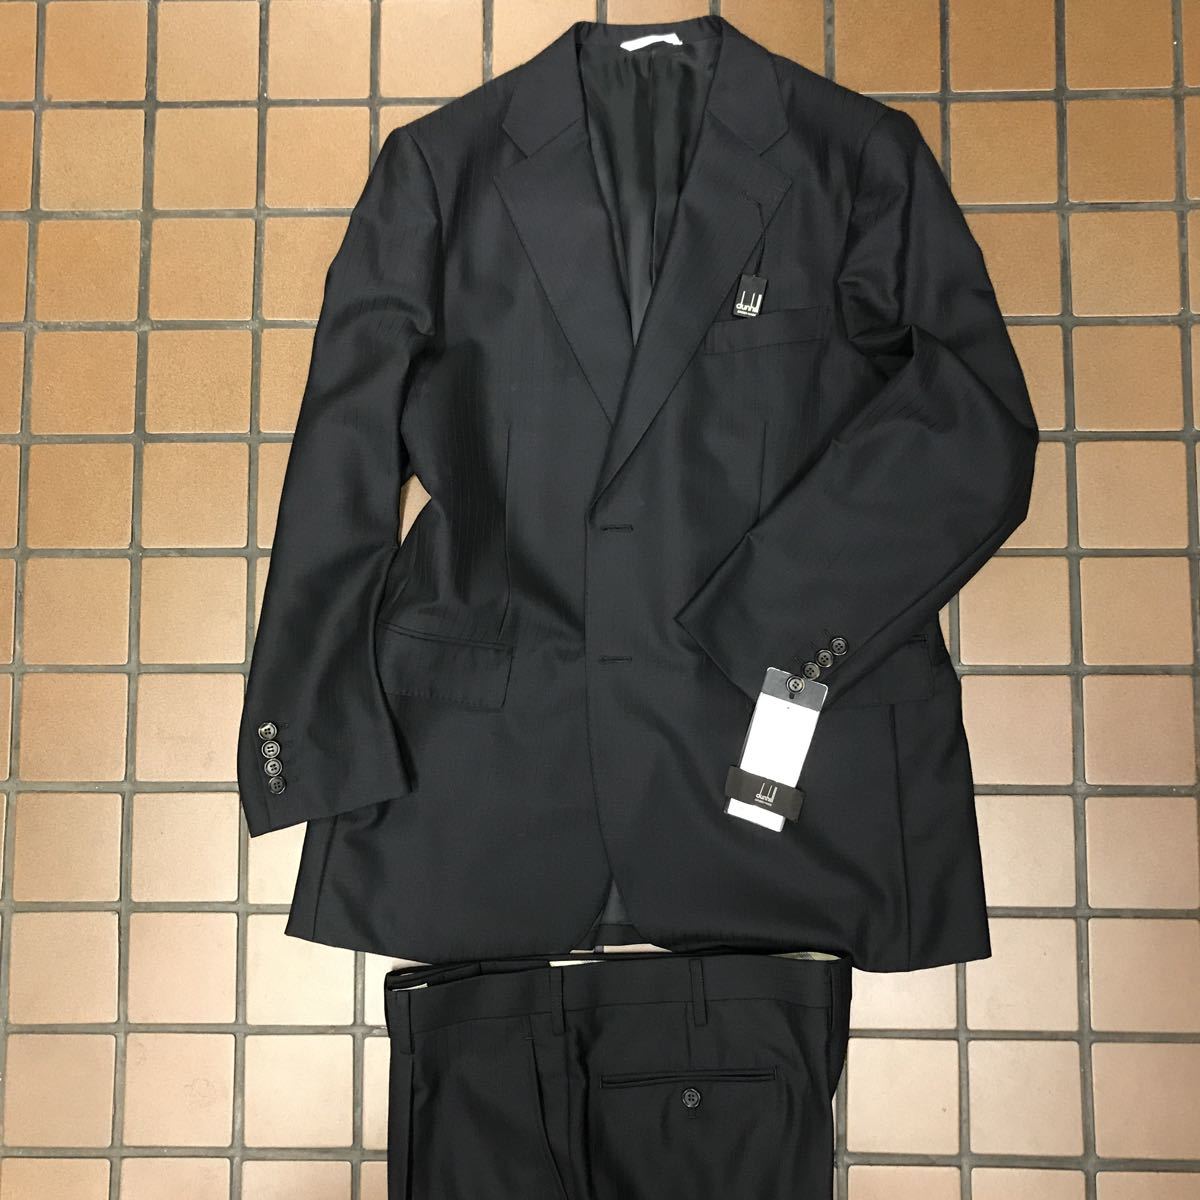 新品タグ付きdunhill order made2つボタンスーツセットアップビックサイズBB6 ダンヒル光沢のブラックシャドウストライプ日本製ウール100%